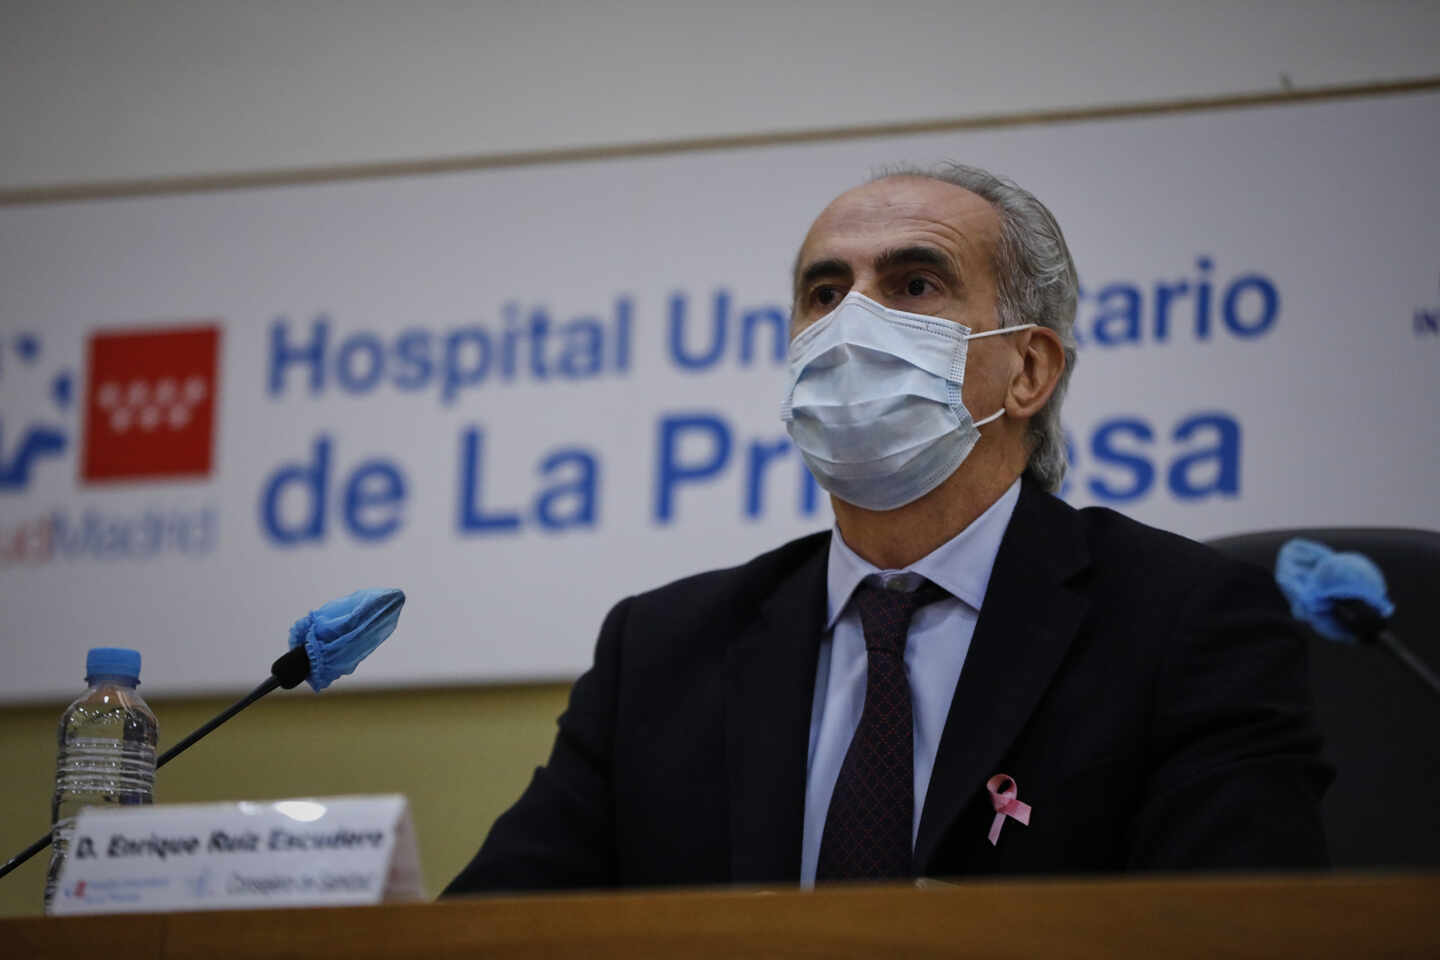 El consejero de Sanidad, Enrique Ruiz en el Hospital Universitario de La Princesa, Madrid.